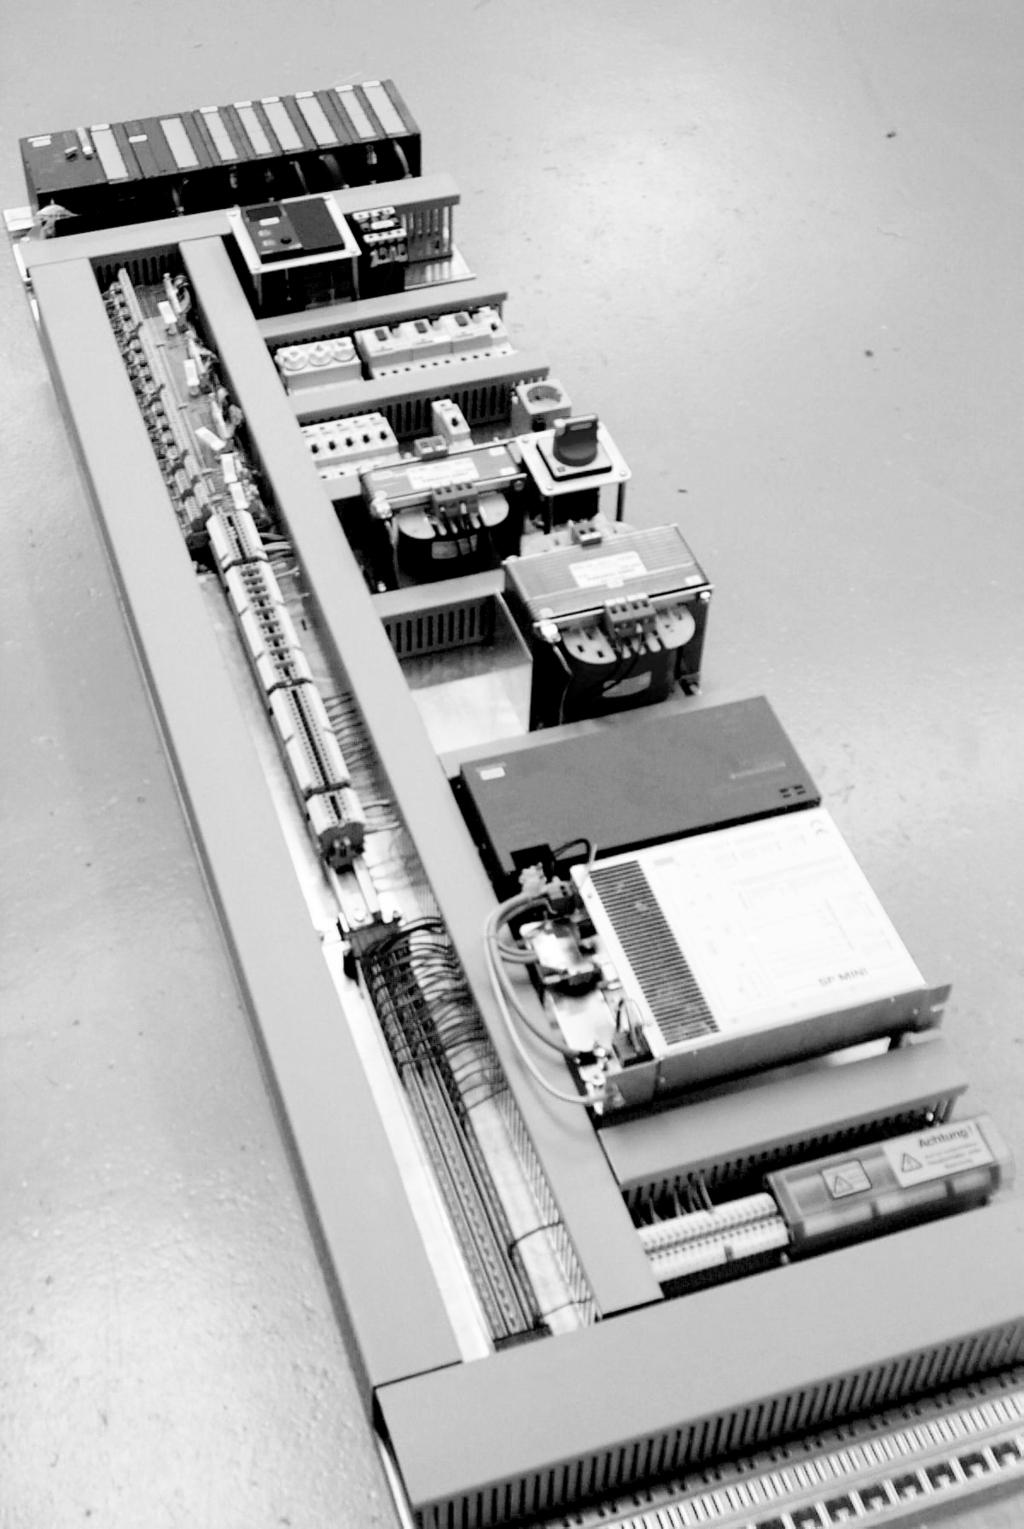 FRIEDRICH VOLLMER Feinmeßgerätebau GMBH 58093 Hagen Verbandsstraße 60 ( 02334/507-0 Fax 02334/53015 S7 H SP Mini Control unit for a Vollmer strip thickness gauge: An S7 type PLC is installed above